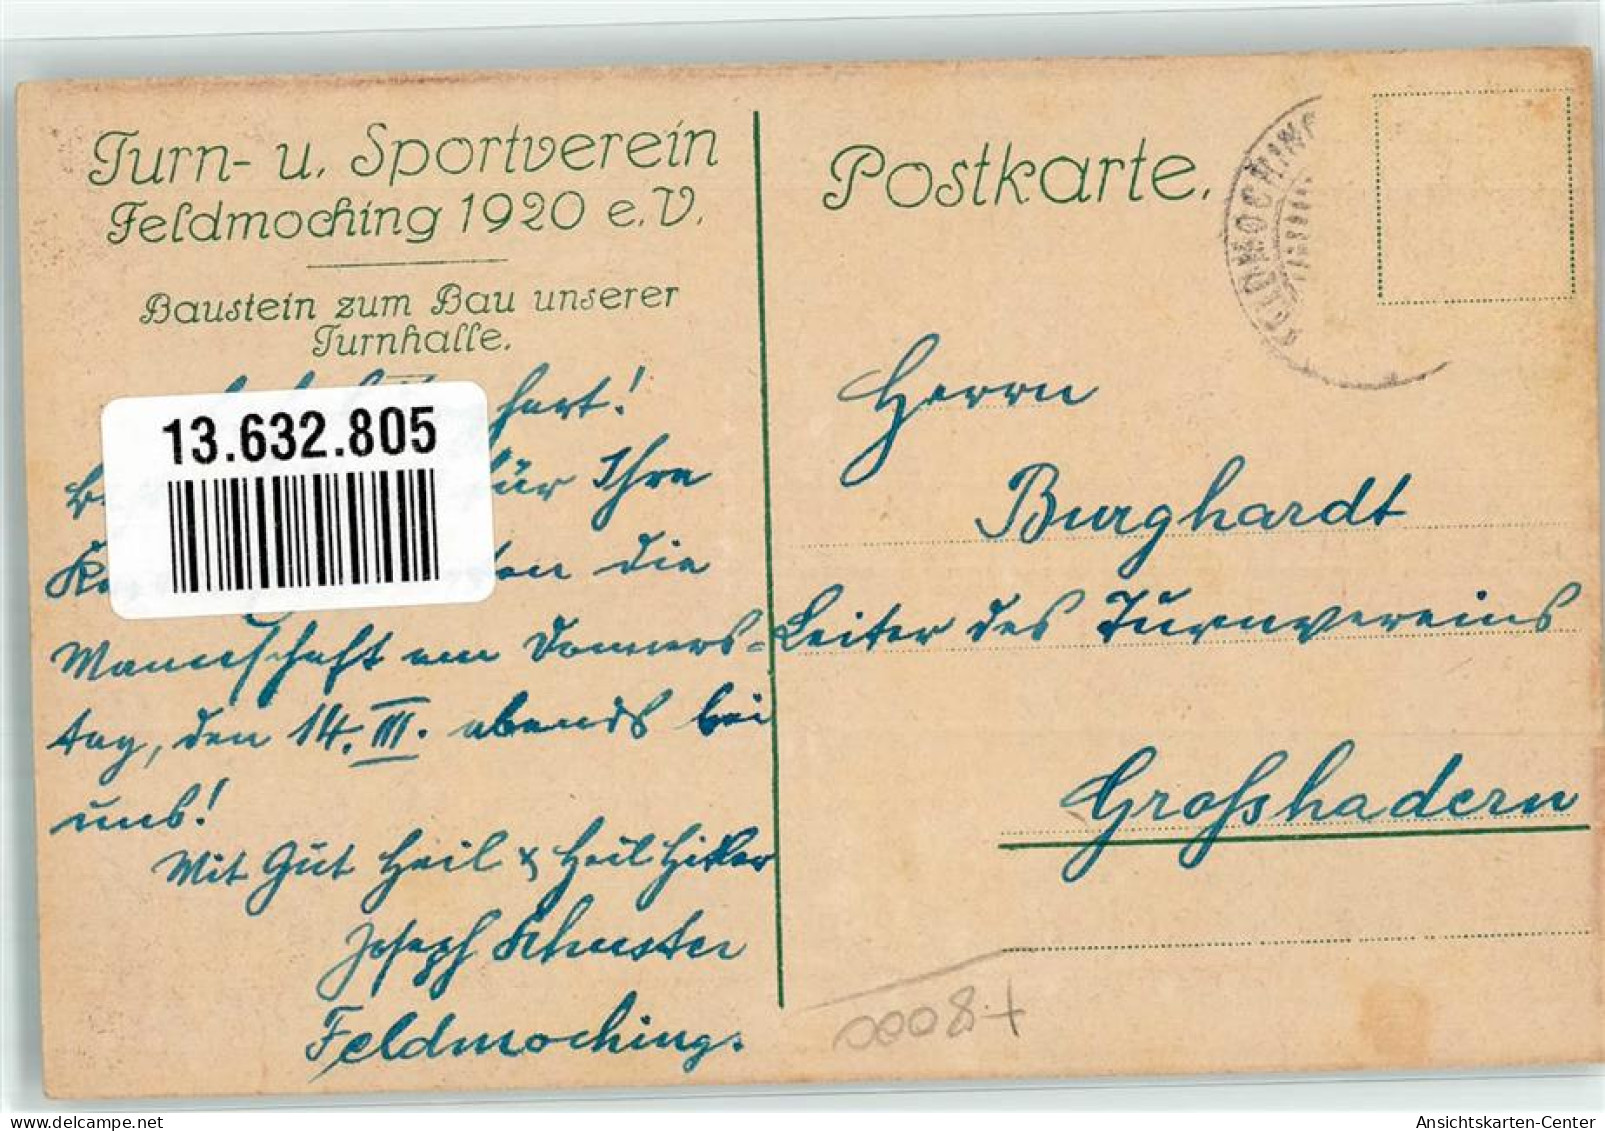 13632805 - Feldmoching - Muenchen